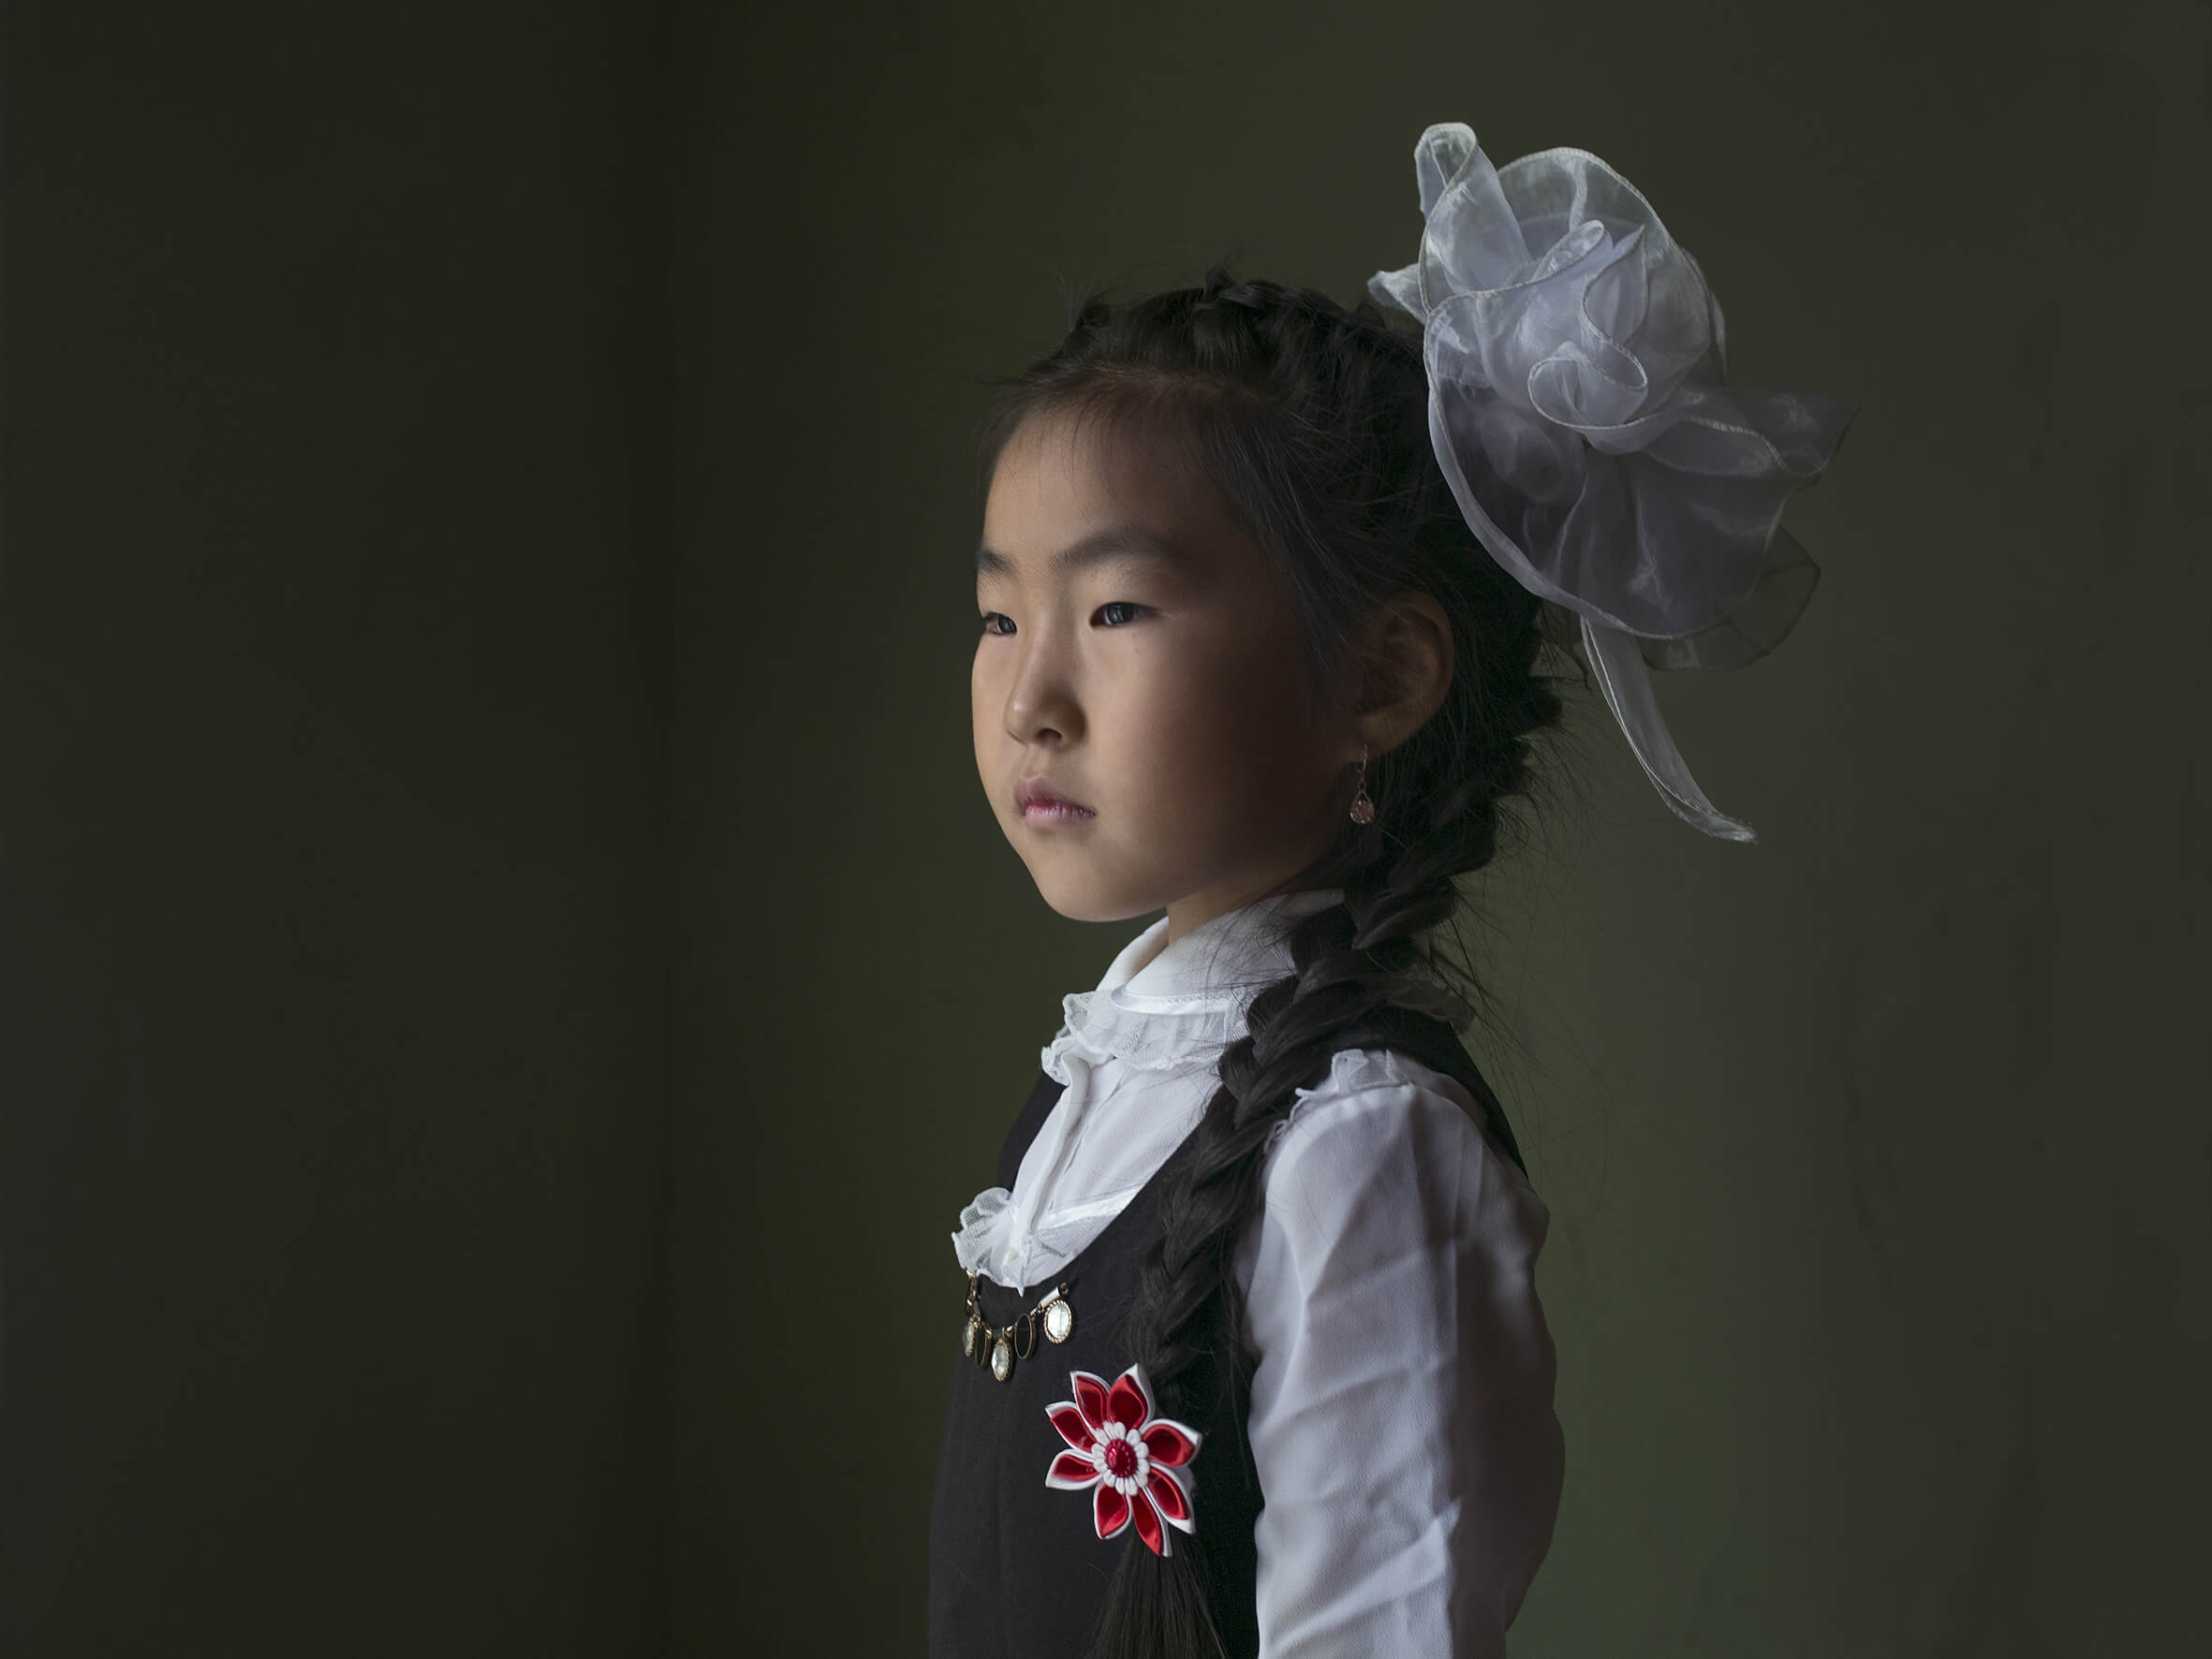 photographie d'une petite fille avec une tresse et un fond vert par la photographe Claudine Doury